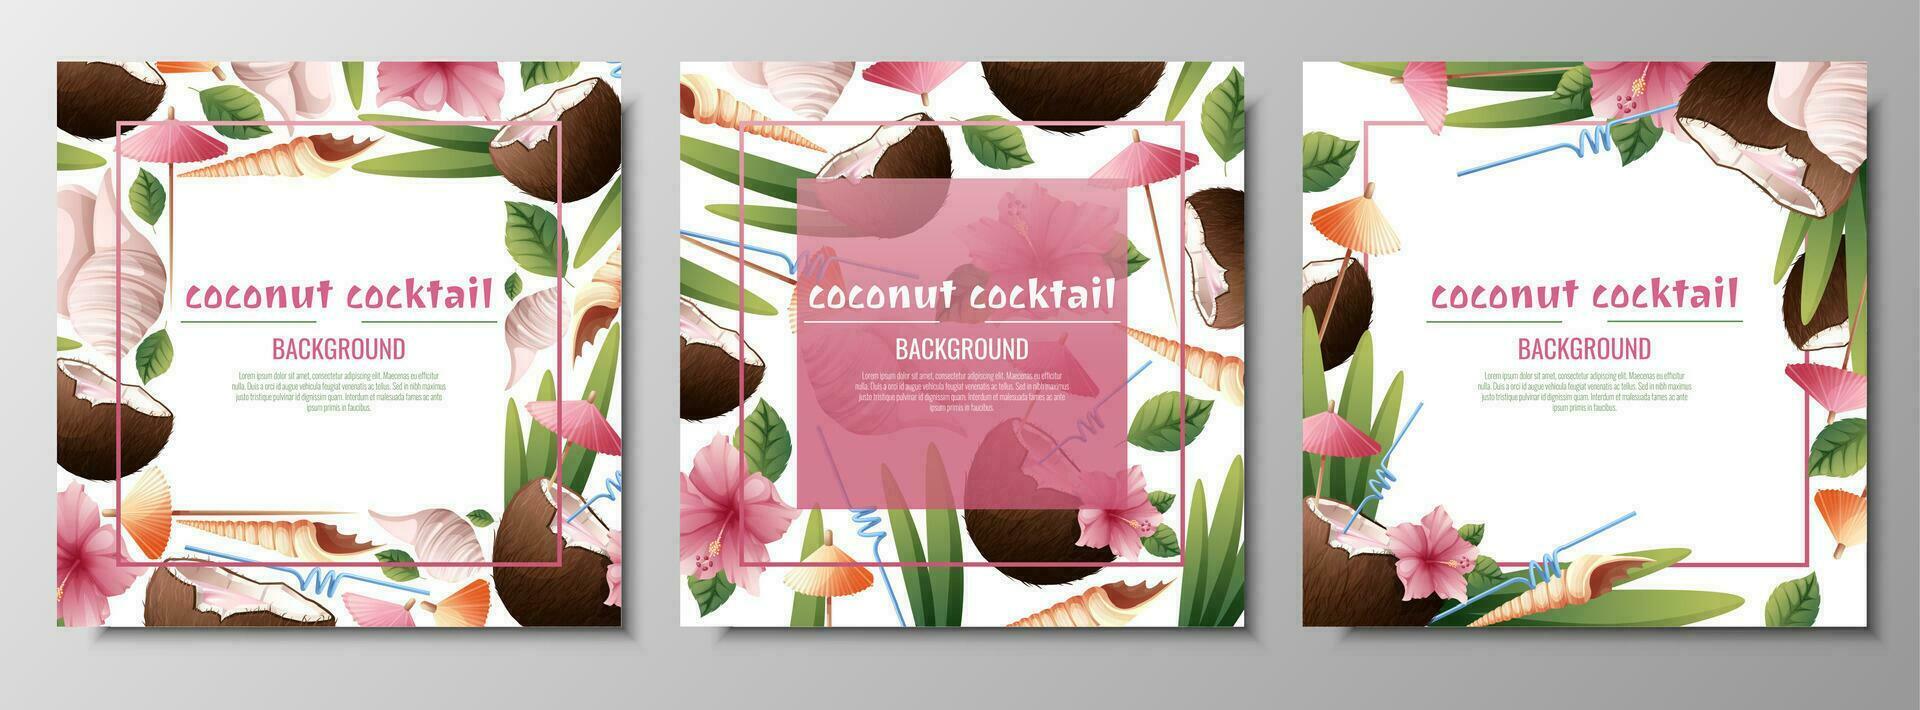 uppsättning av vykort mallar med kokos cocktails, paraplyer, hibiskus blommor, skal.bakgrund med strand drycker för fester, högtider, reklam. sommar baner med kokos tropisk frukt vektor